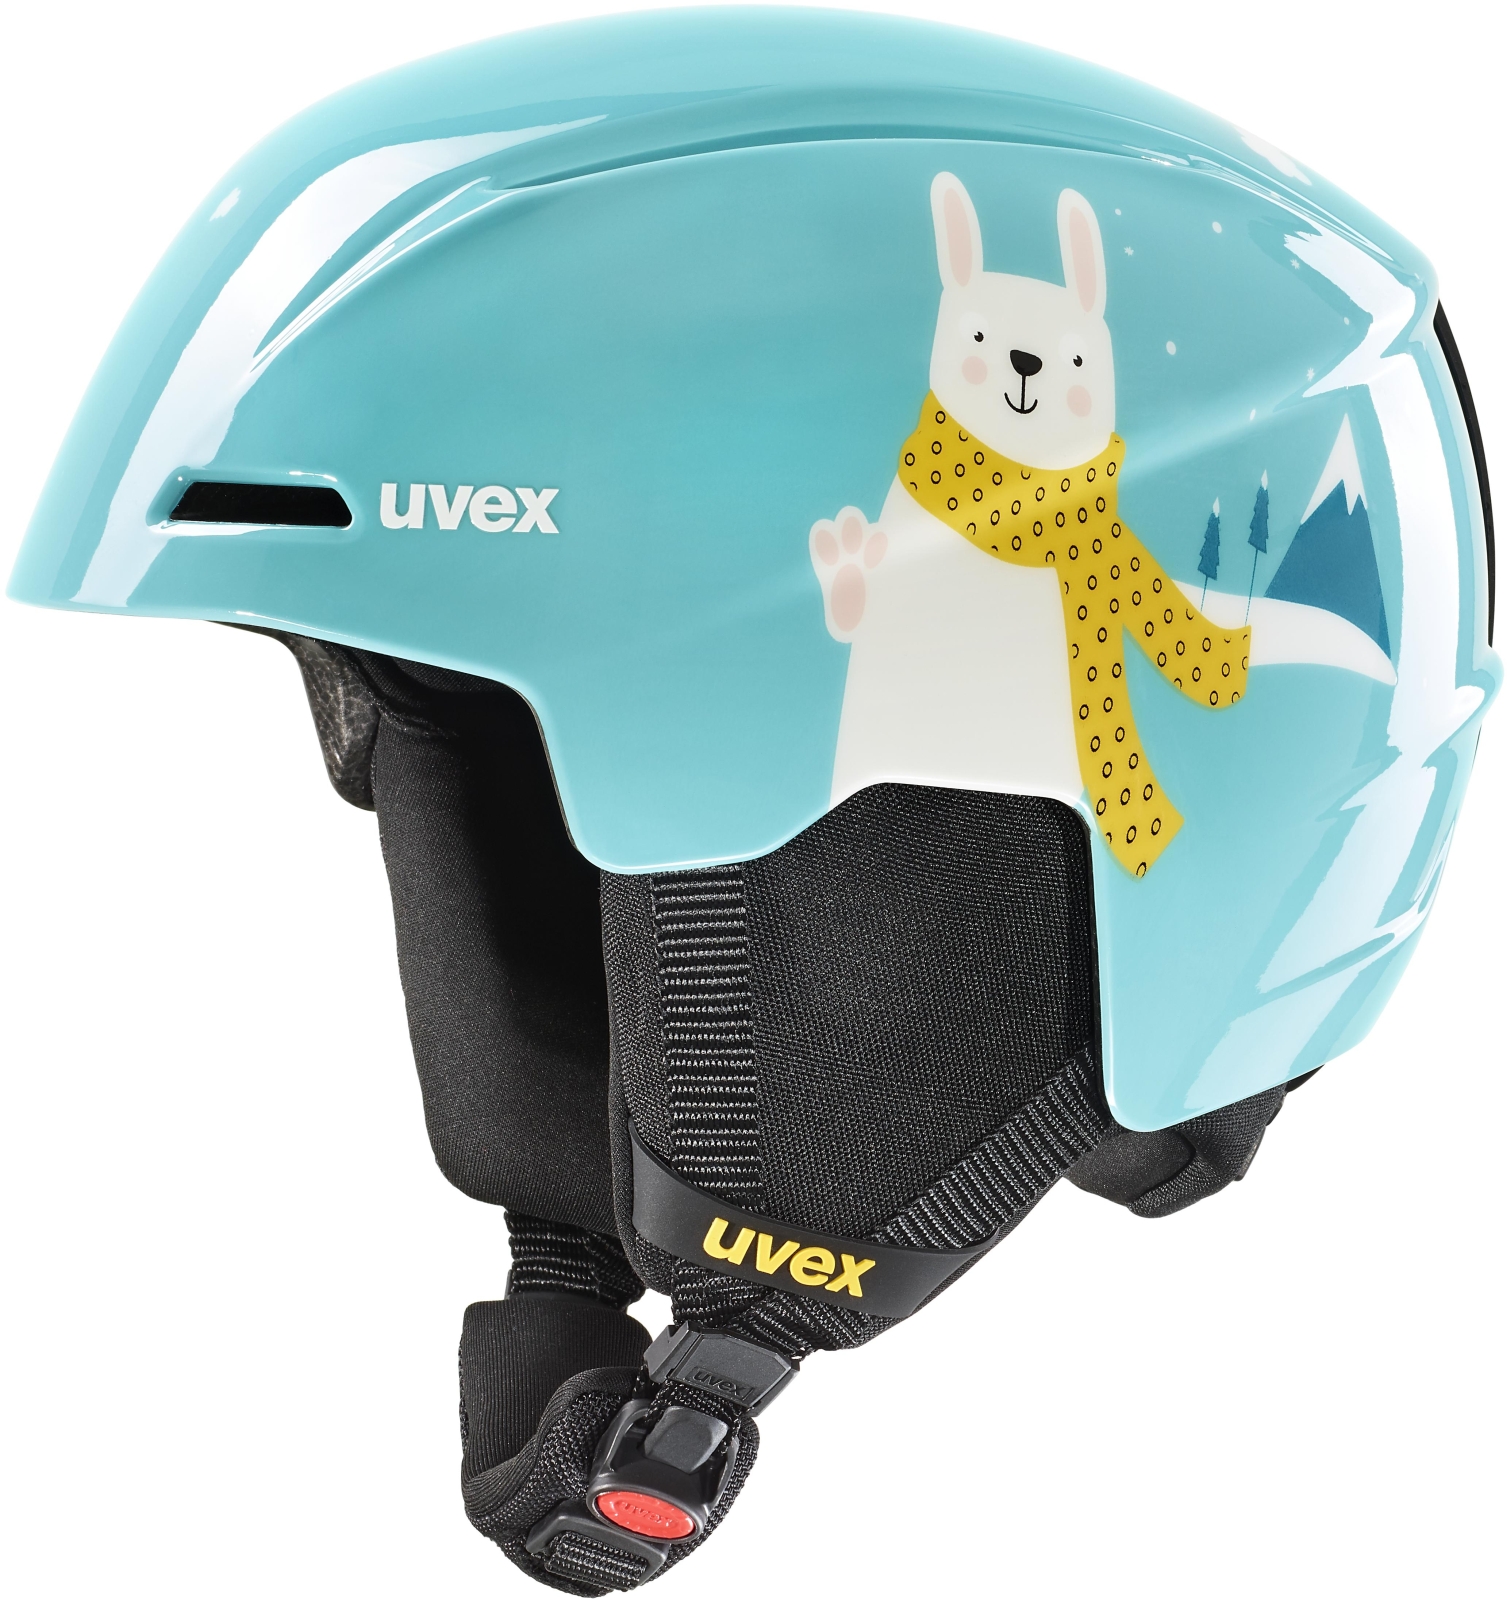 Uvex Viti - turquoise rabbit 46-50